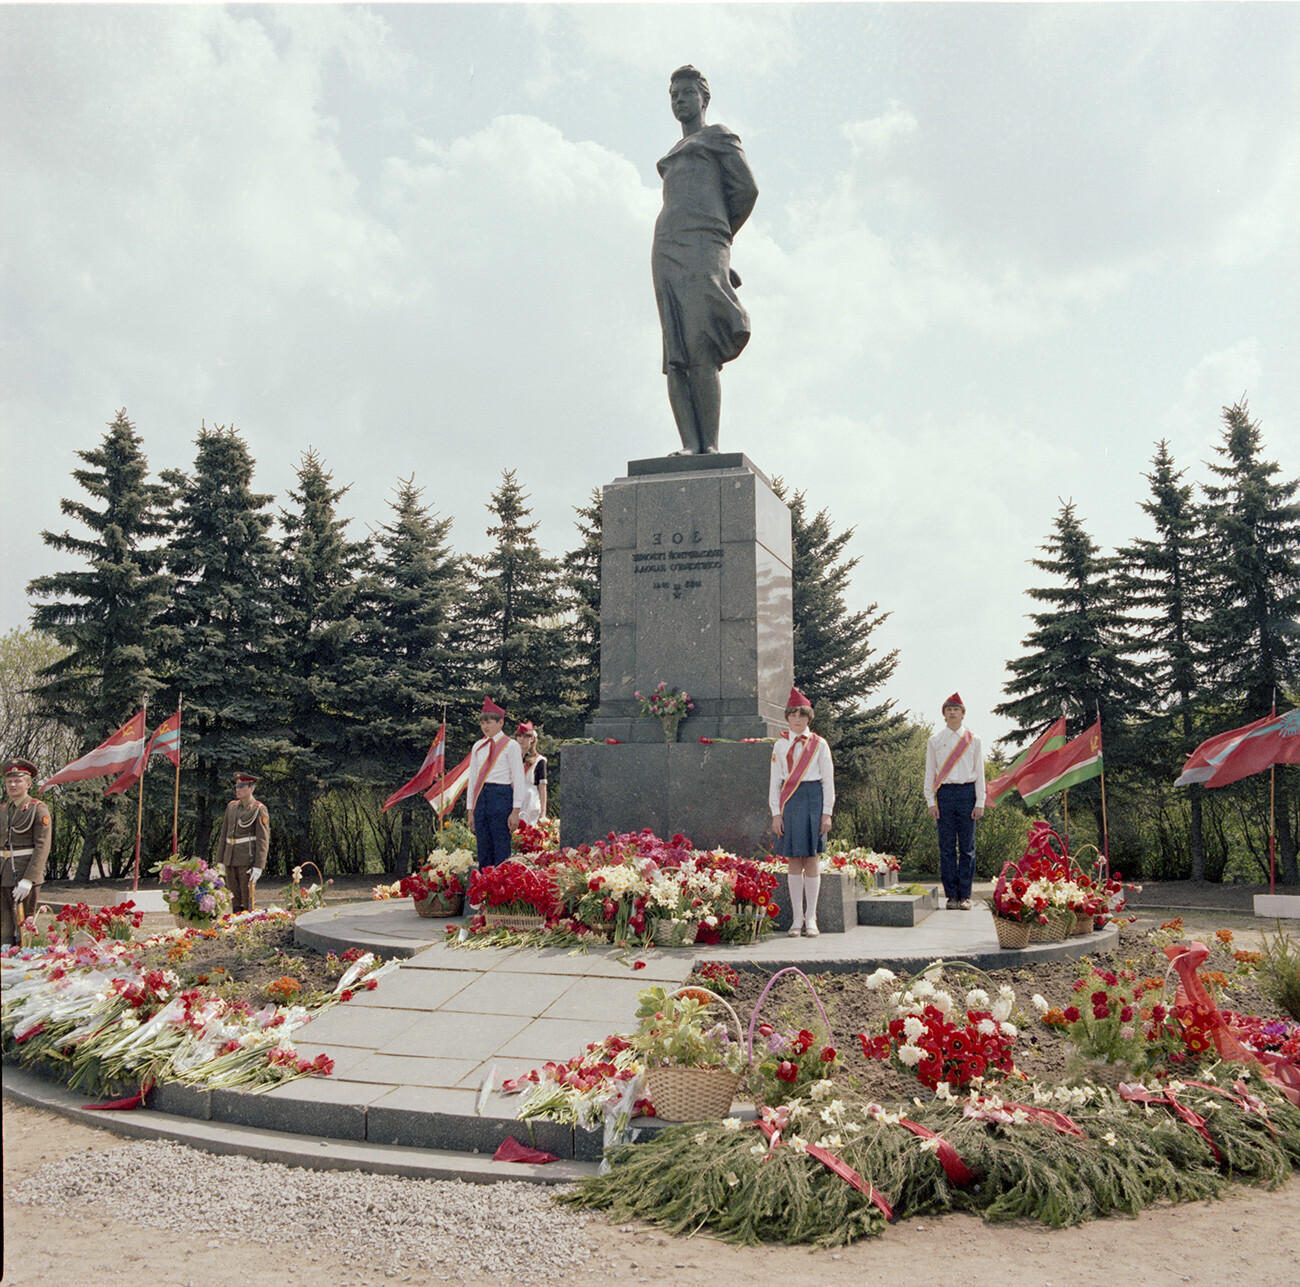 Monumento a Zoja Kosmodemjanskaja in una foto di epoca sovietica